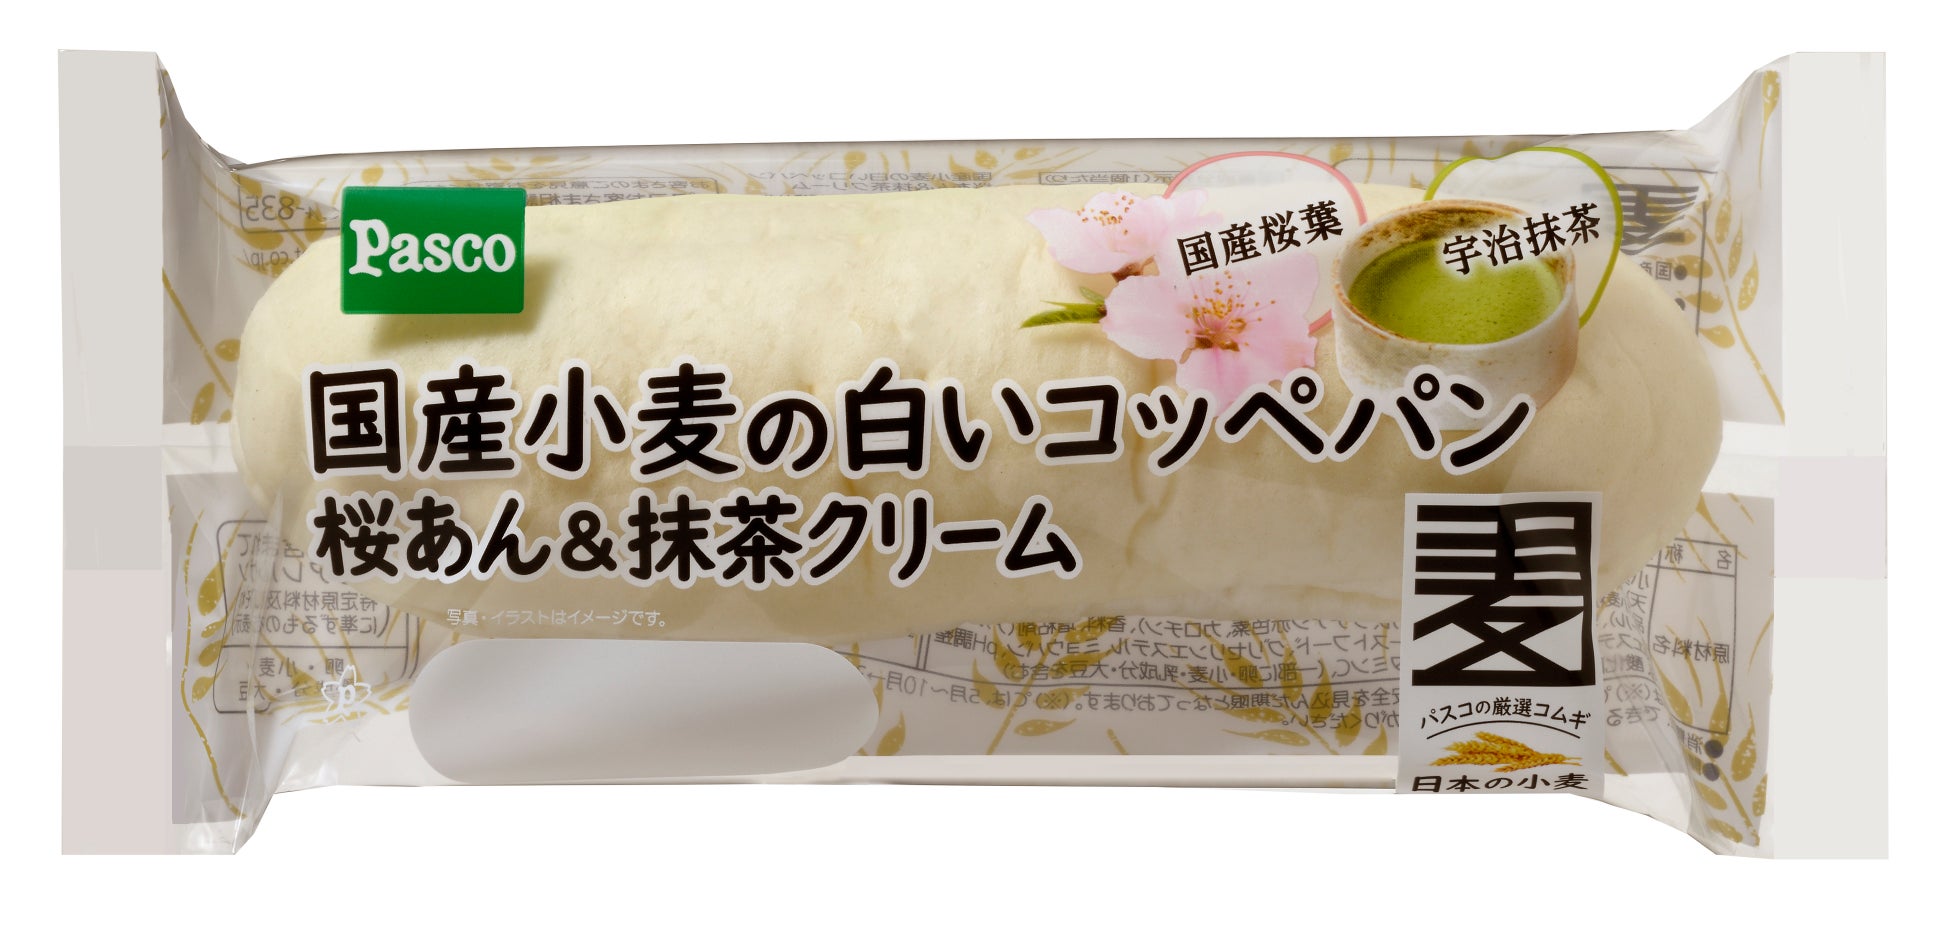 平田牧場、毎日の食卓におすすめ、まな板いらずでかんたん便利な「切出し味噌漬け」新発売